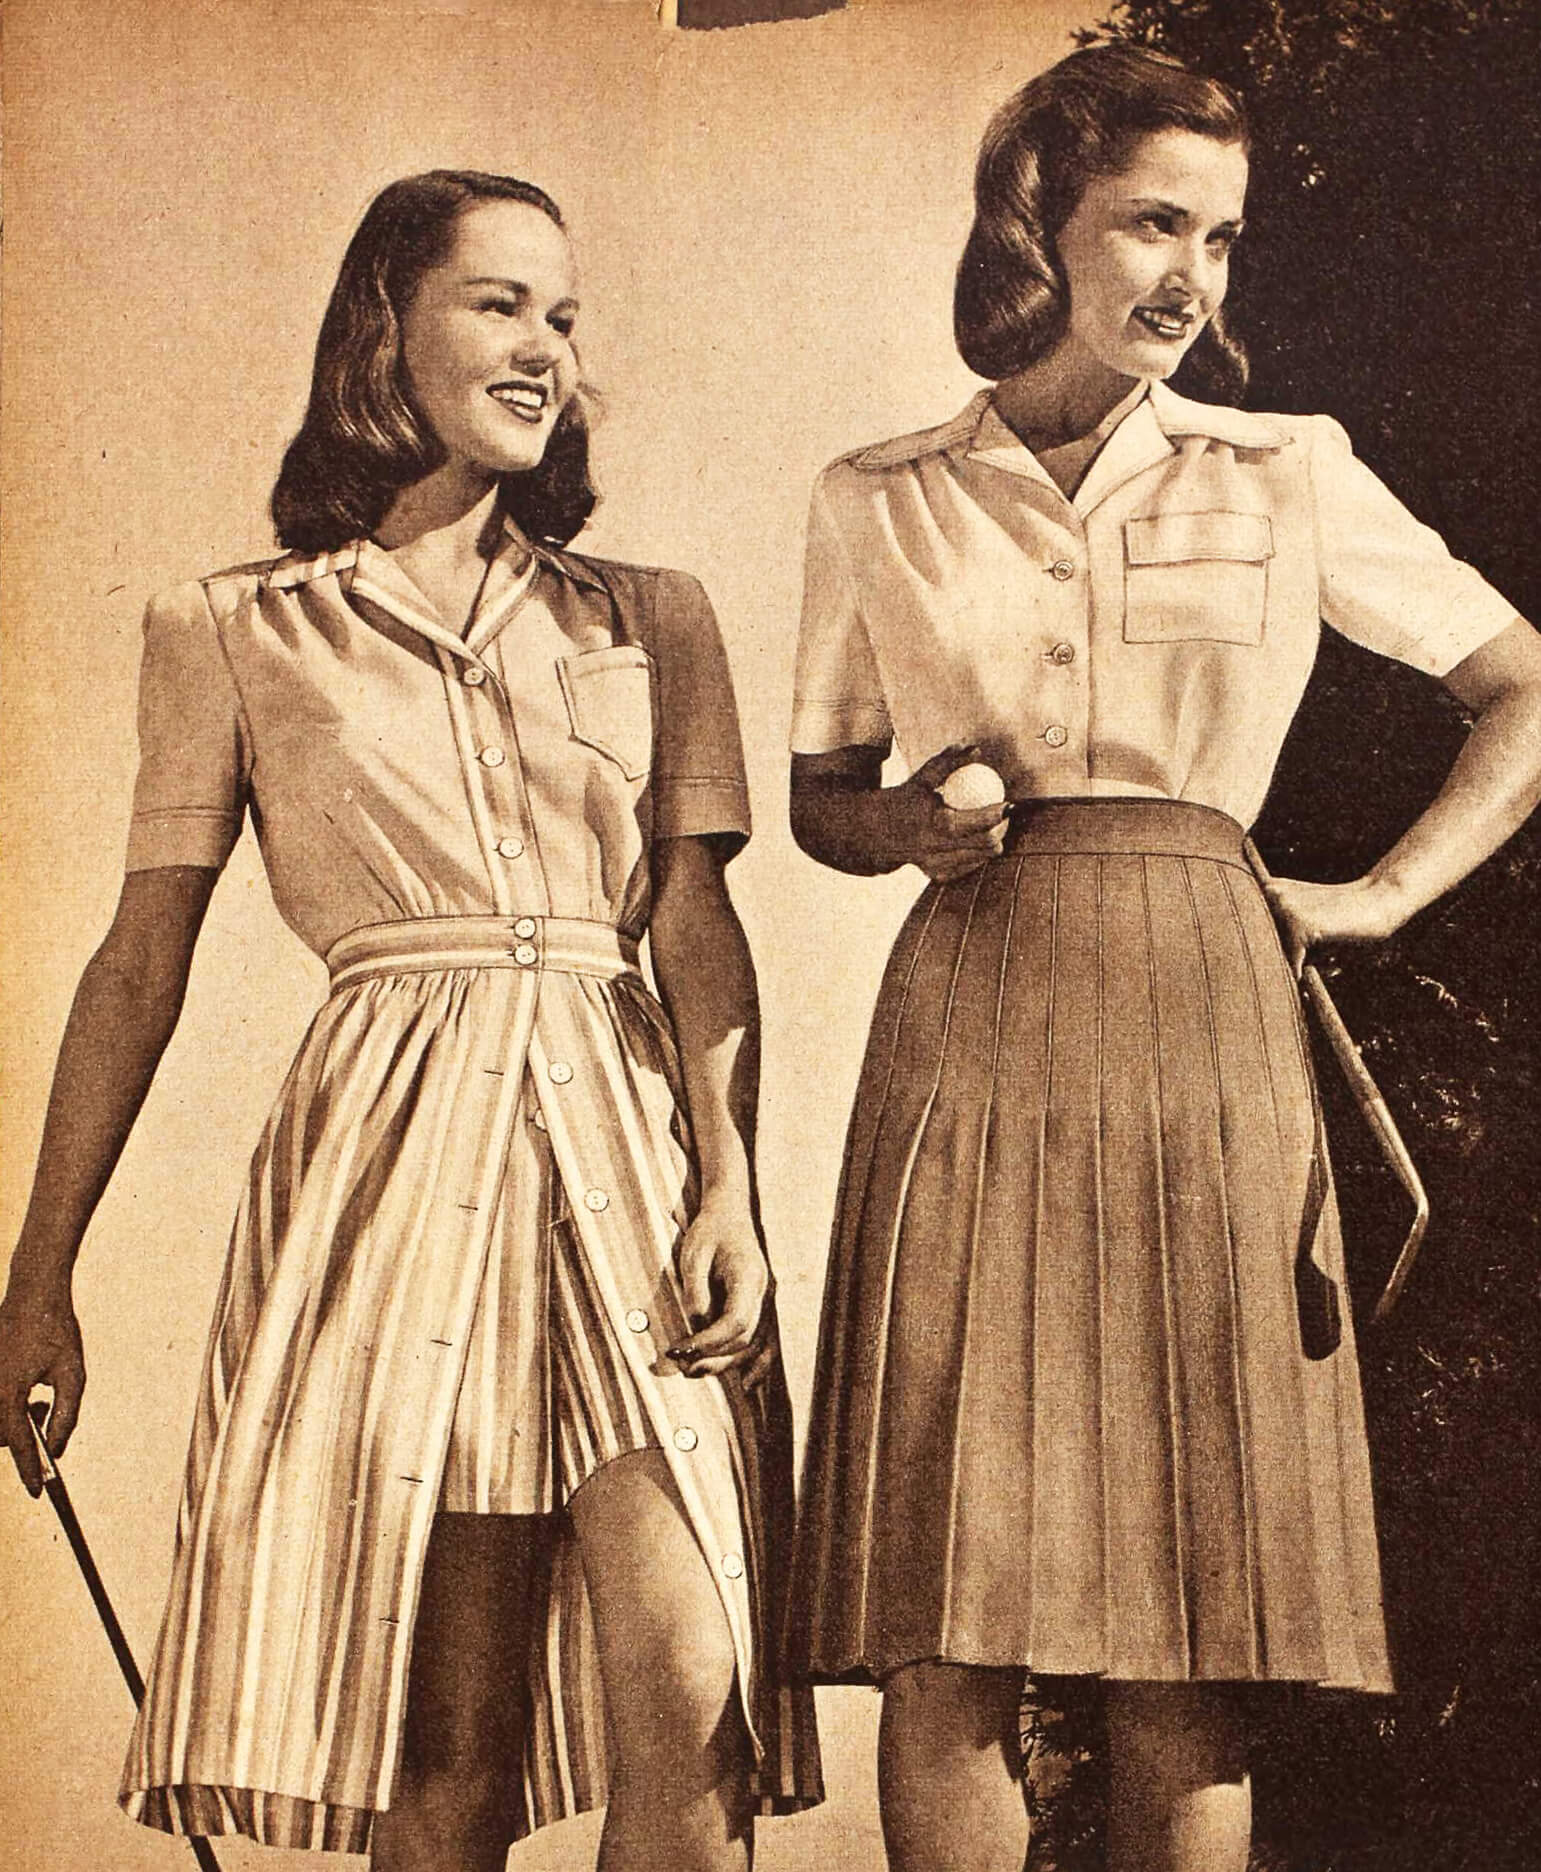  Vintage Women's Clothes